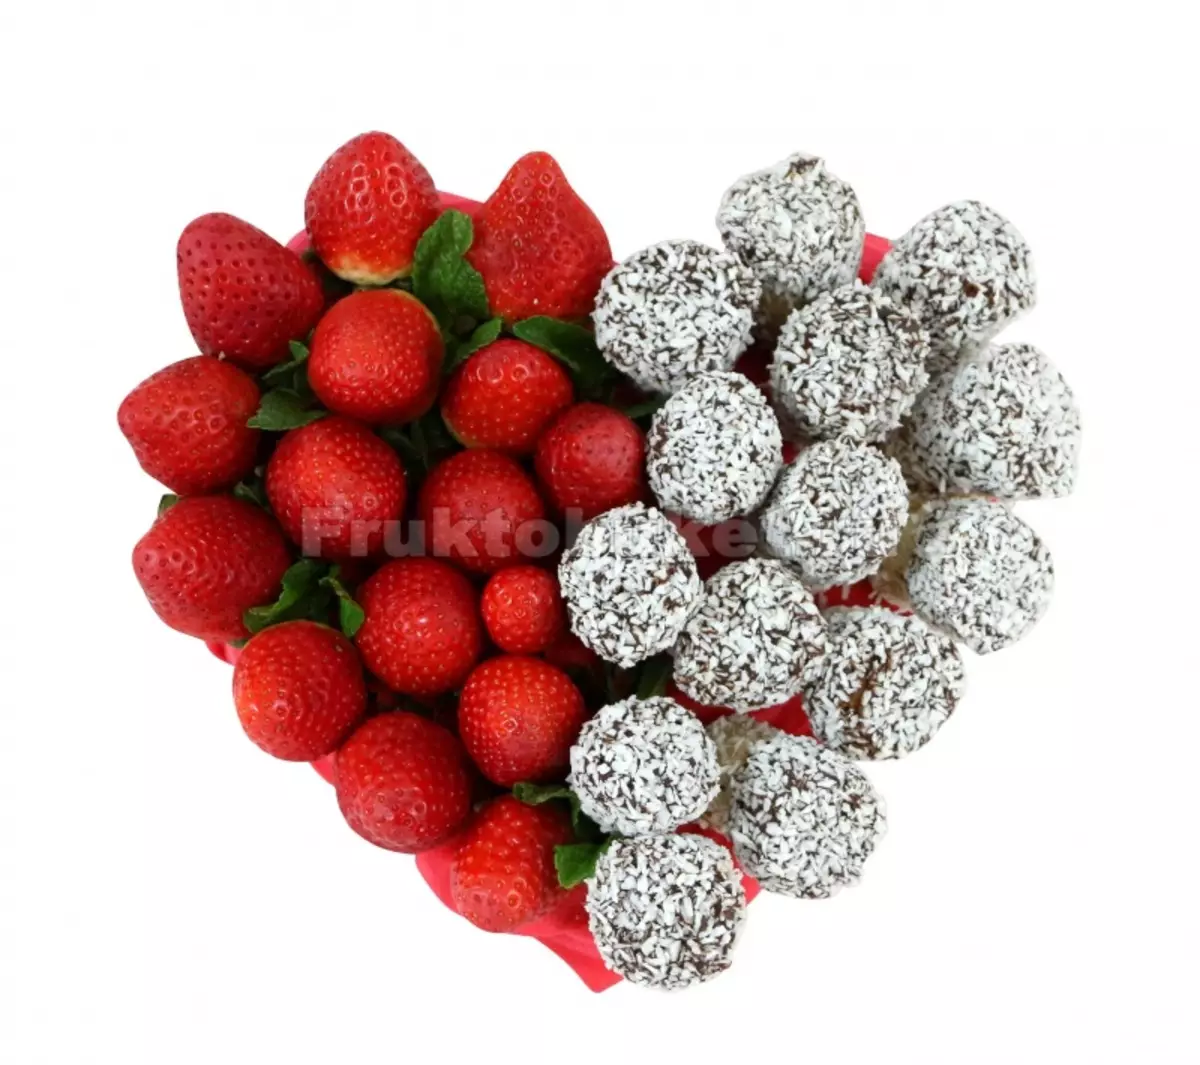 ດອກໄມ້ສະຕໍເບີຣີ (36 ຮູບພາບ): ວິທີເຮັດສະຕໍເບີຣີໃນຊັອກໂກແລັດໃນຊຸດຂອງມືຂອງທ່ານຂັ້ນຕອນ? ວິທີການເຮັດເປັນ bouquet strawberry ຂອງ strawberries ແລະສີ? 26653_12